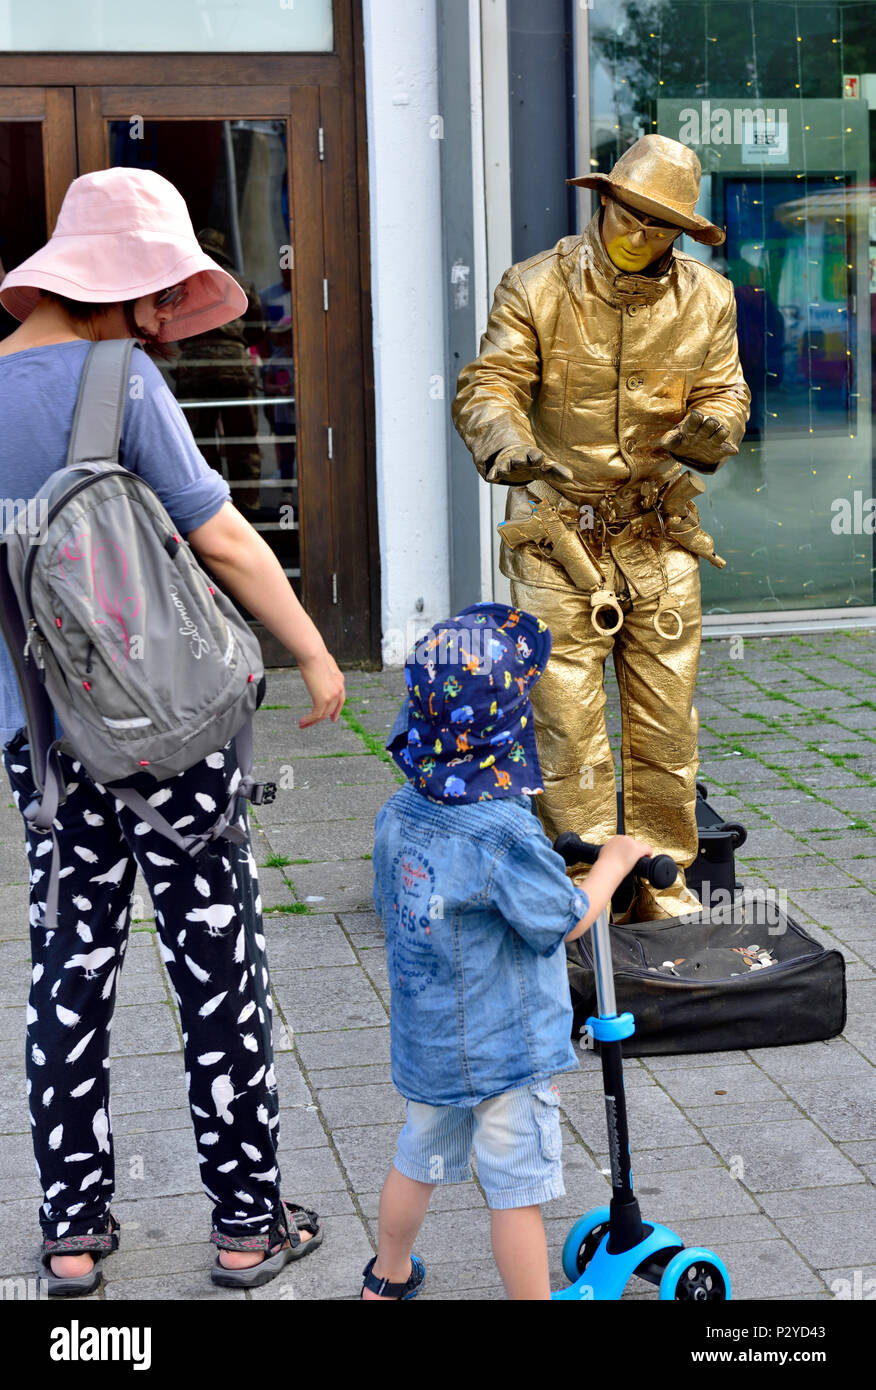 Gold cowboy lebende Statue Interaktion mit Frau und junge Zuschauer, zentrale Bristol, Großbritannien Stockfoto